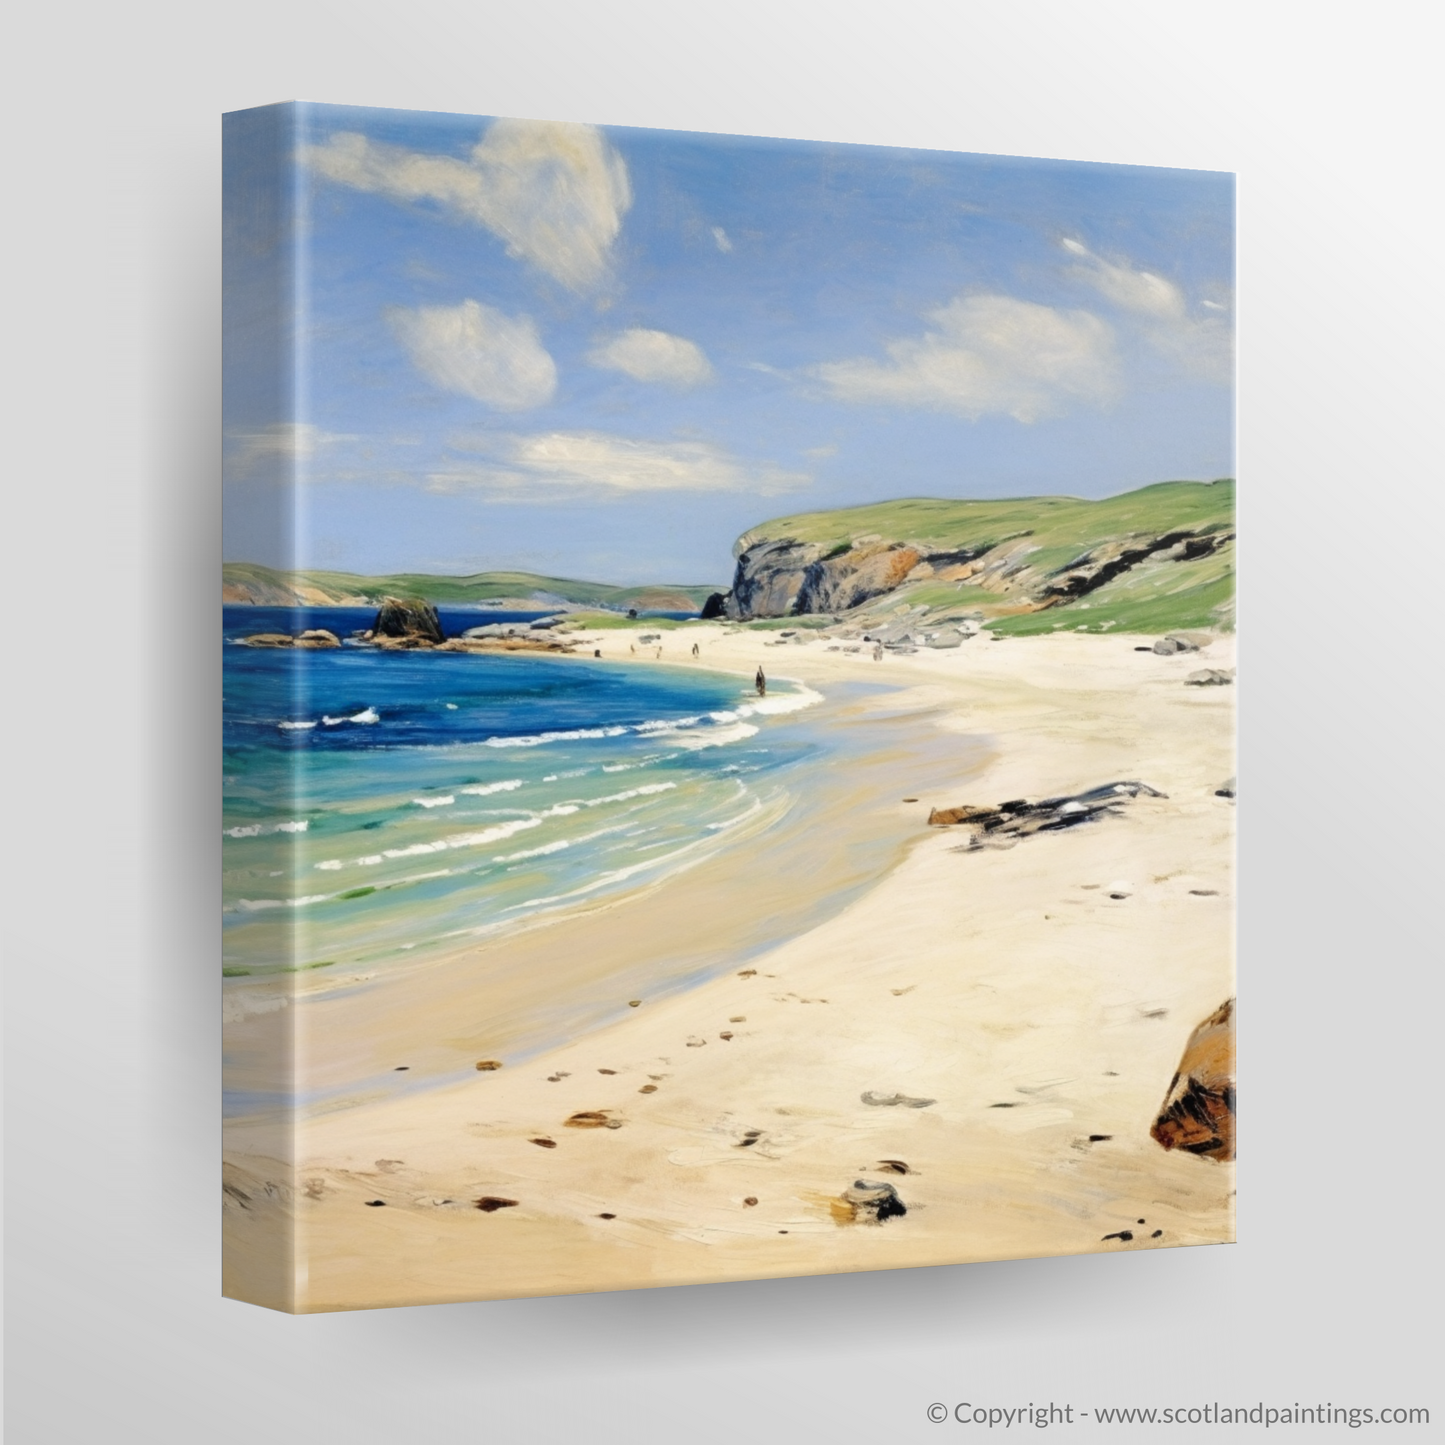 Serene Shores of Sandwood Bay: An Impressionist Ode to Sutherland's Coastal Gem